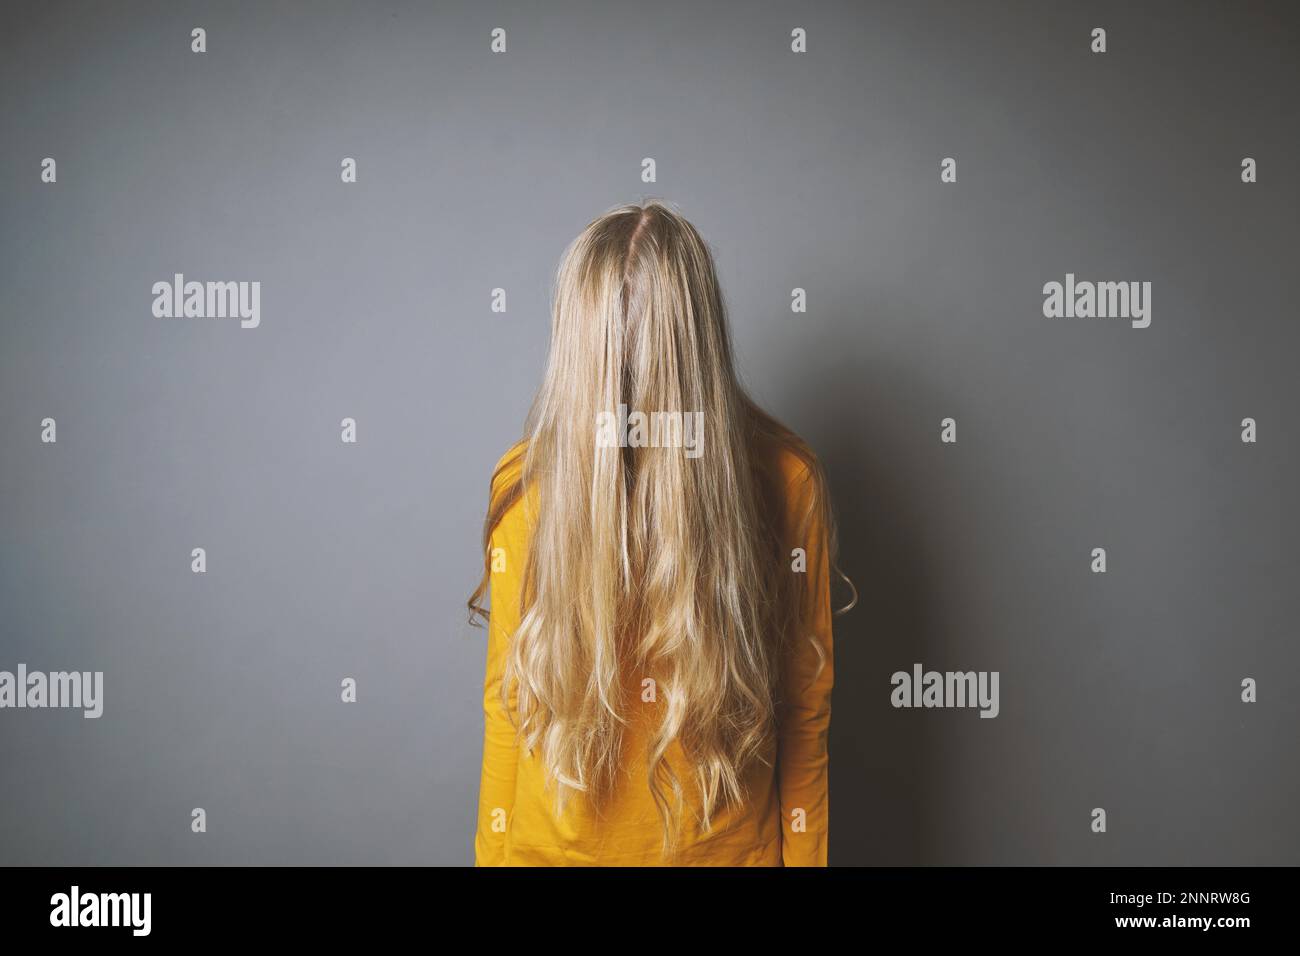 Deprimiert junge Frau ihr Gesicht verstecken hinter lange blonde Haare, schüchtern oder gleichgültig Jugendmädchen Stockfoto